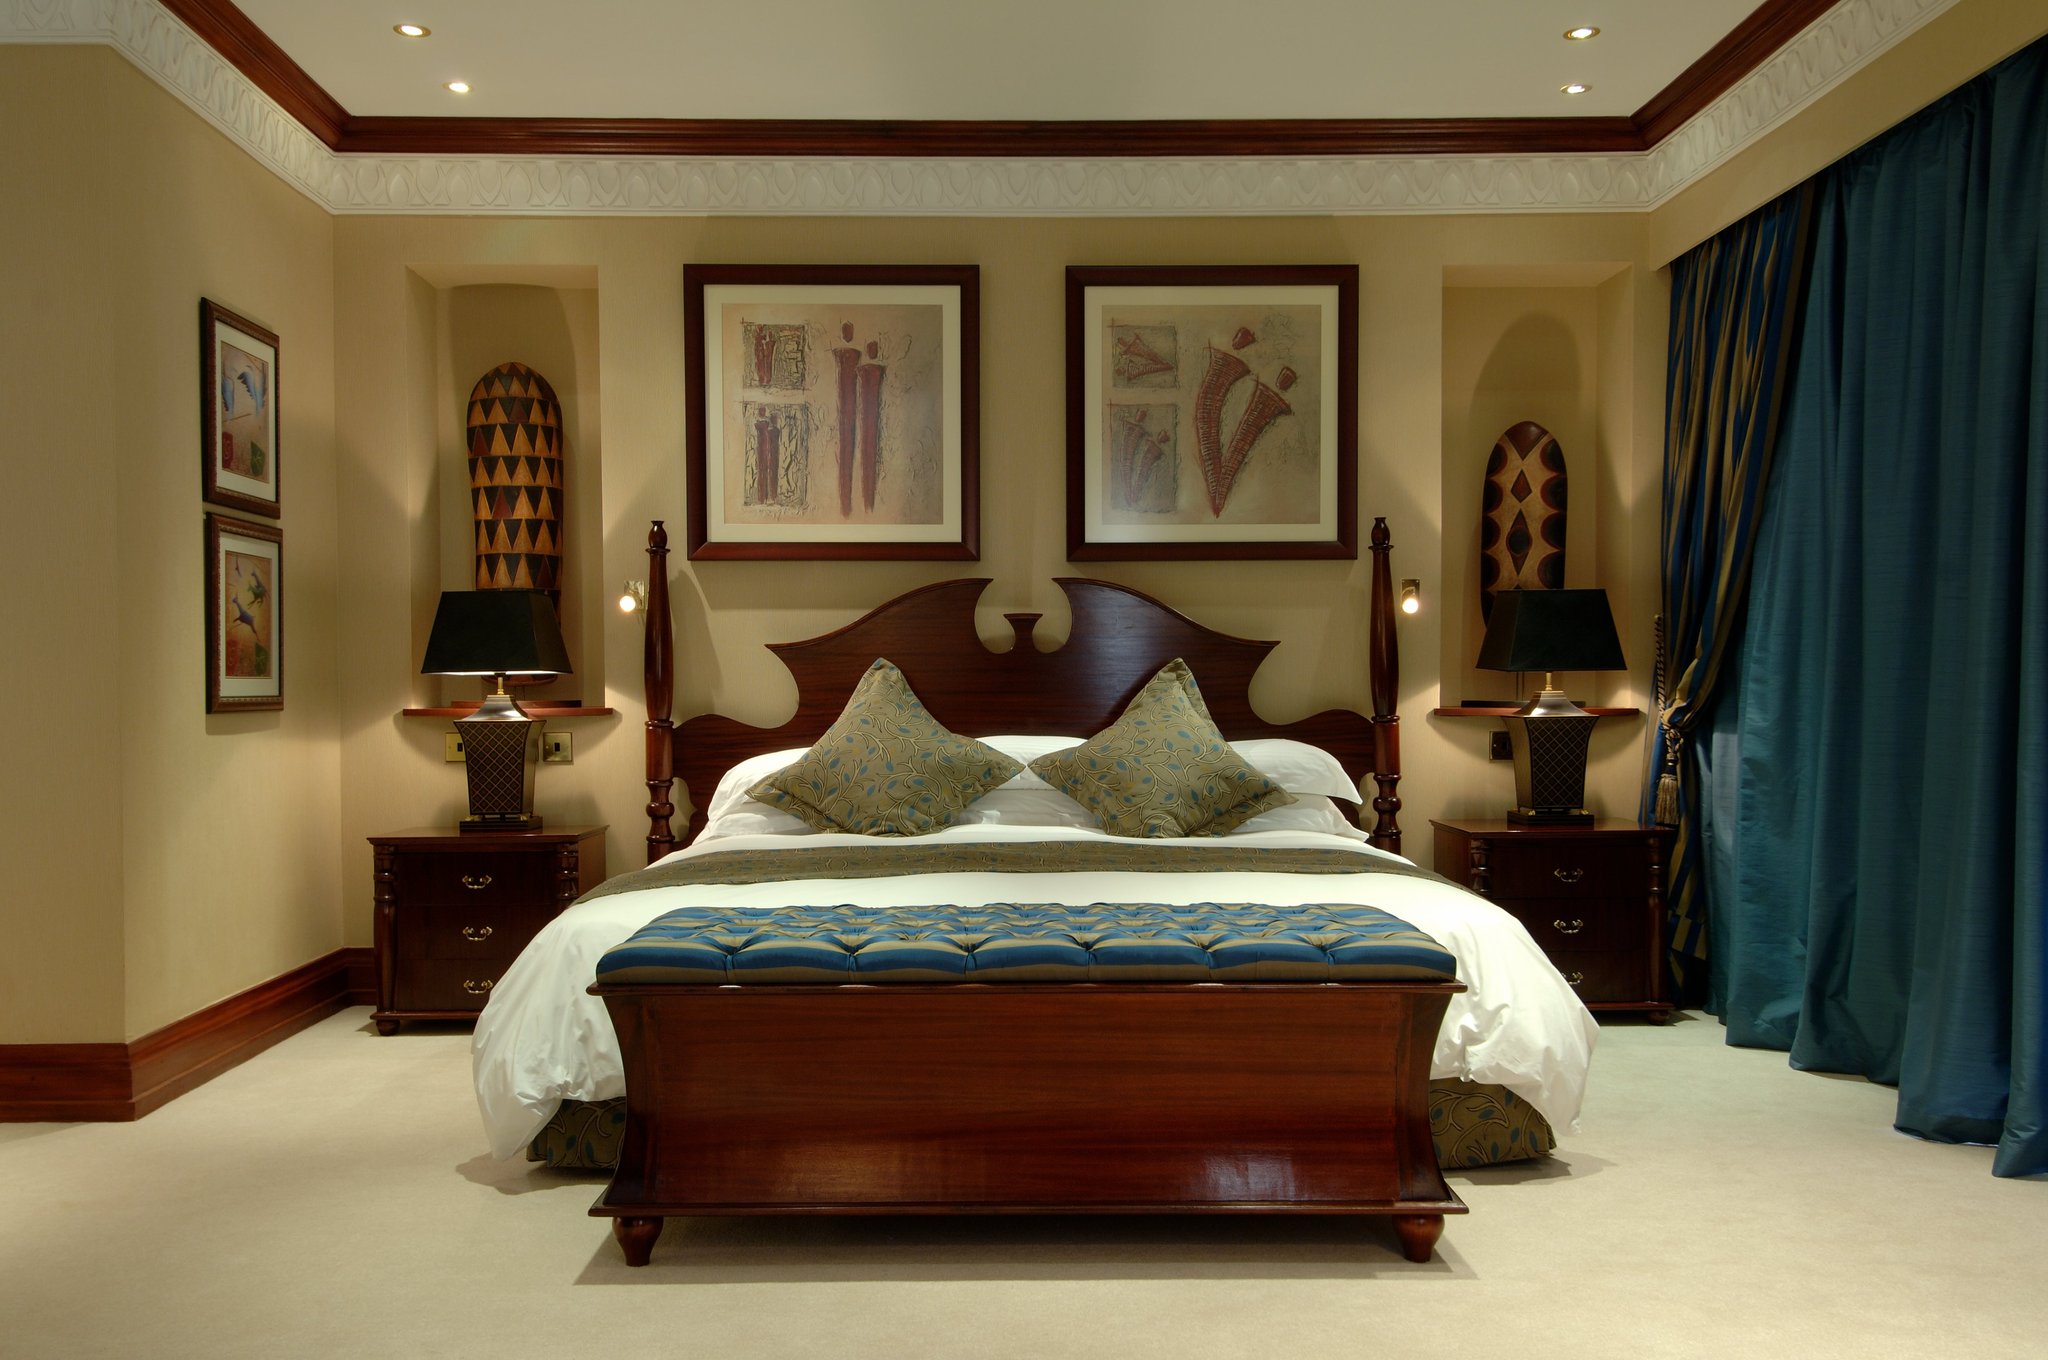 A room at the Kampala Serena Hotel